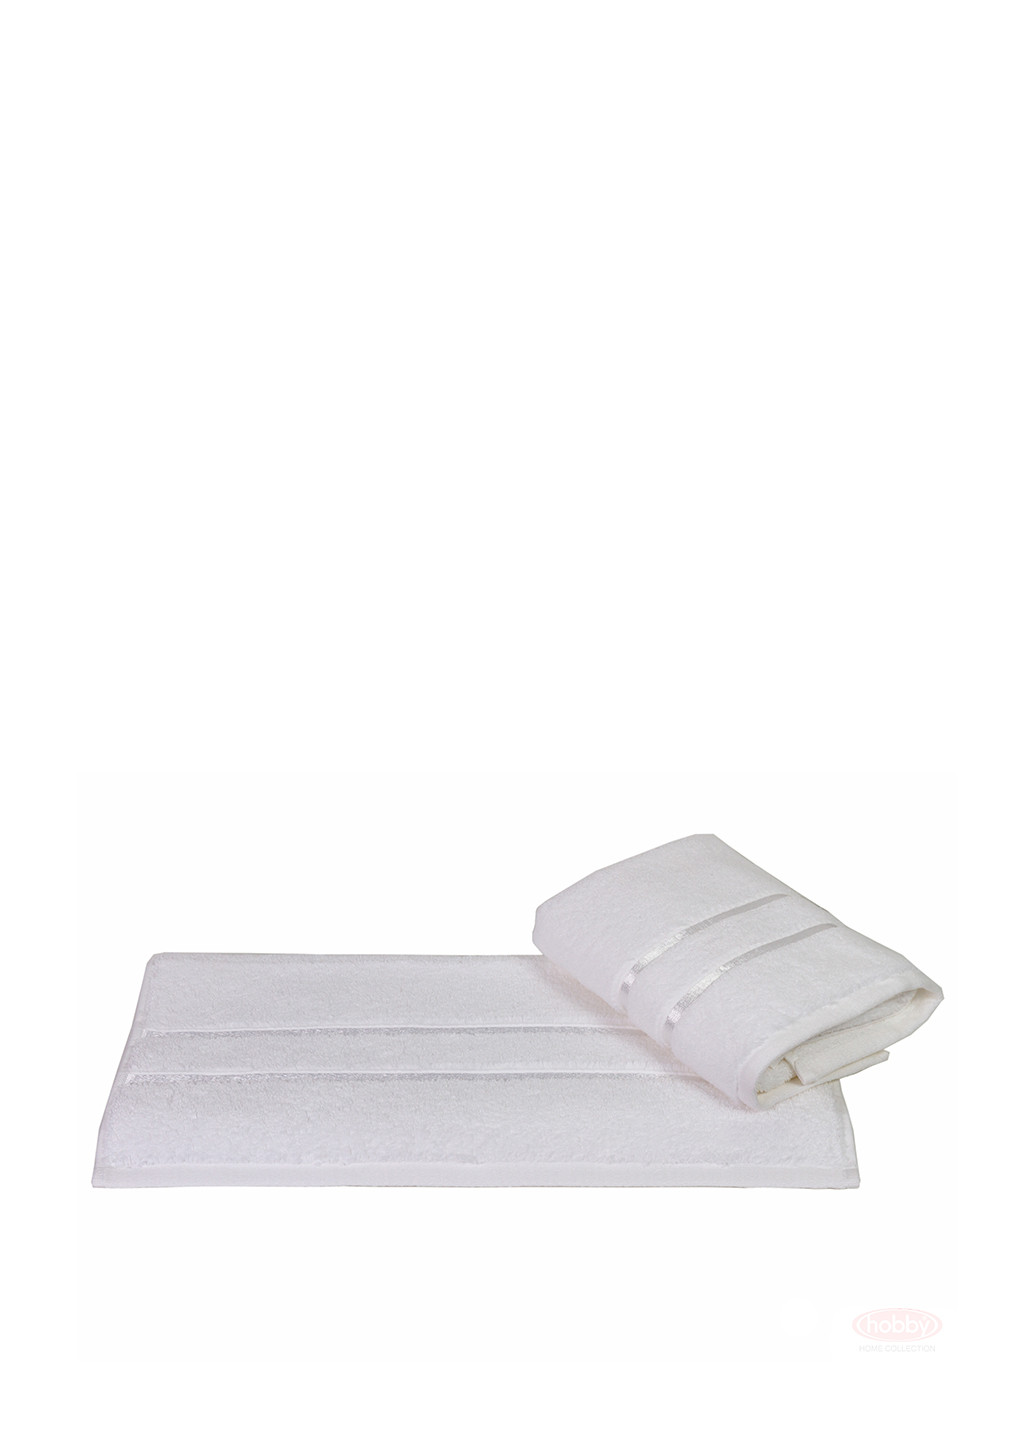 Hobby полотенце, 70х140 см полоска белый производство - Турция